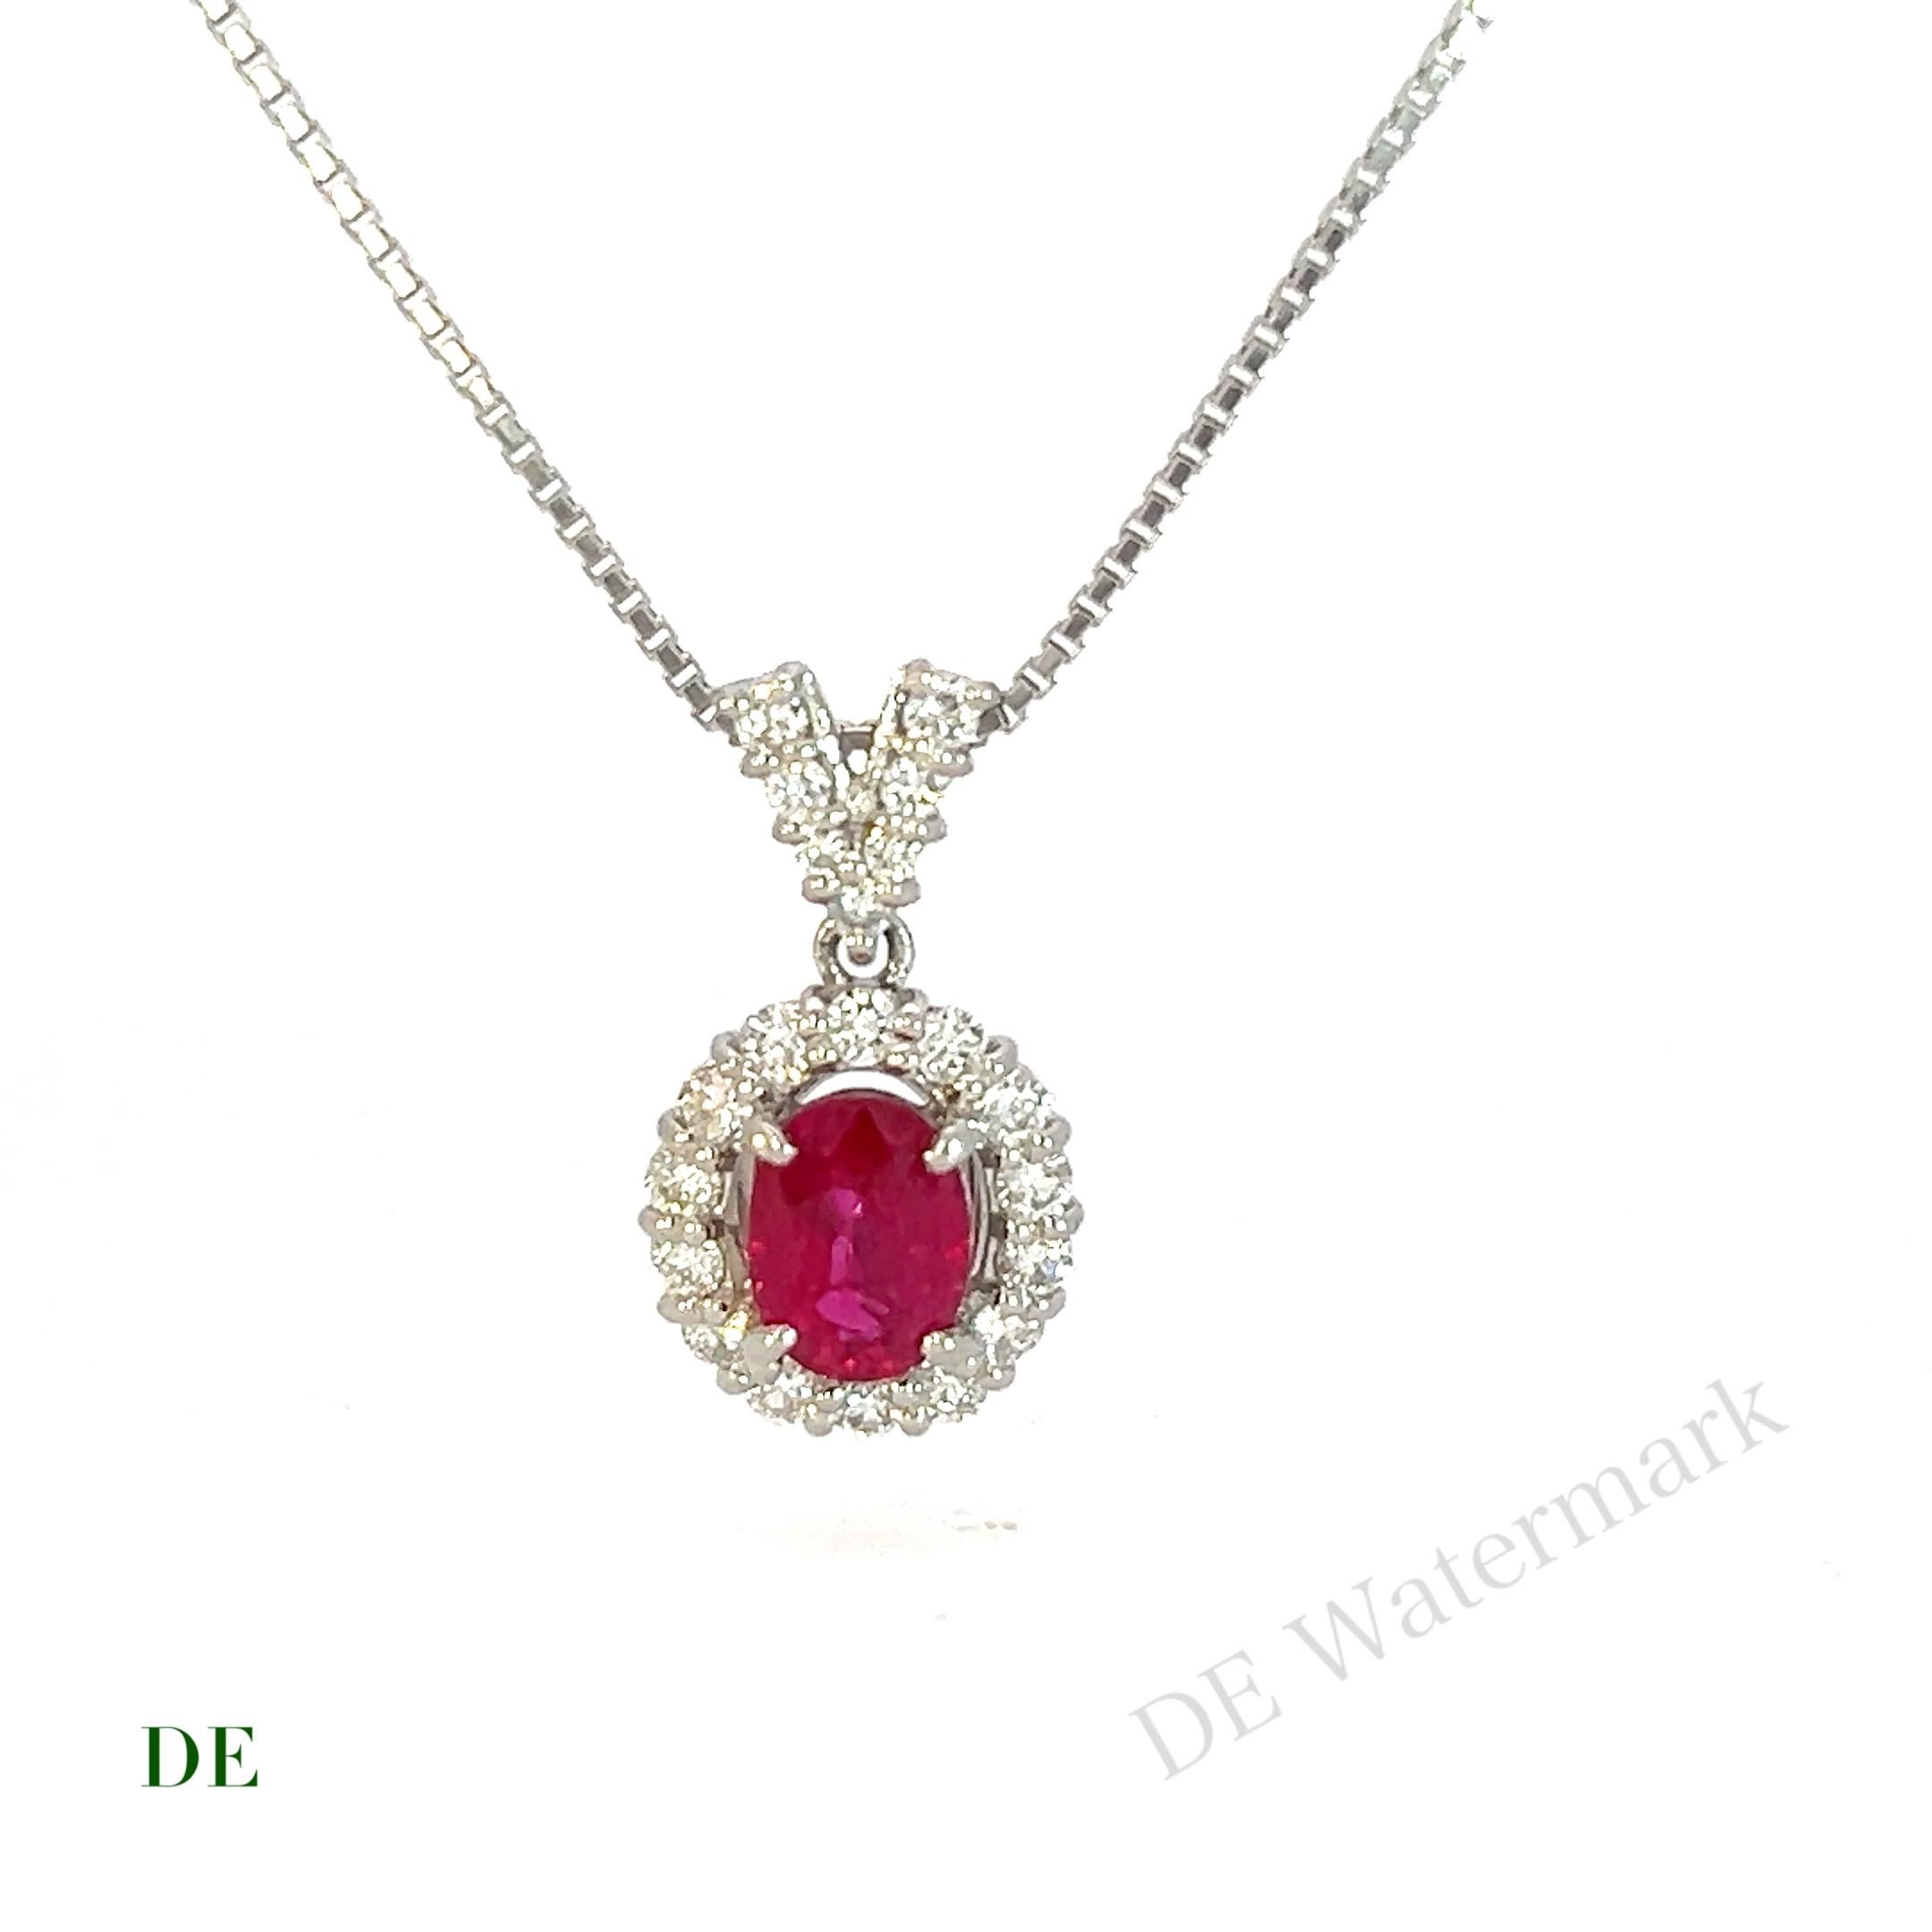 Seltene GIA Platin Gold .94 crt Vivid Red Ruby Burmese .4 crt Diamond Necklace

Unsere seltene GIA-Halskette aus Platin und Gold mit lebhaftem rotem Rubin und burmesischen Diamanten ist ein wahrhaft exquisites Stück, das die intensive Schönheit